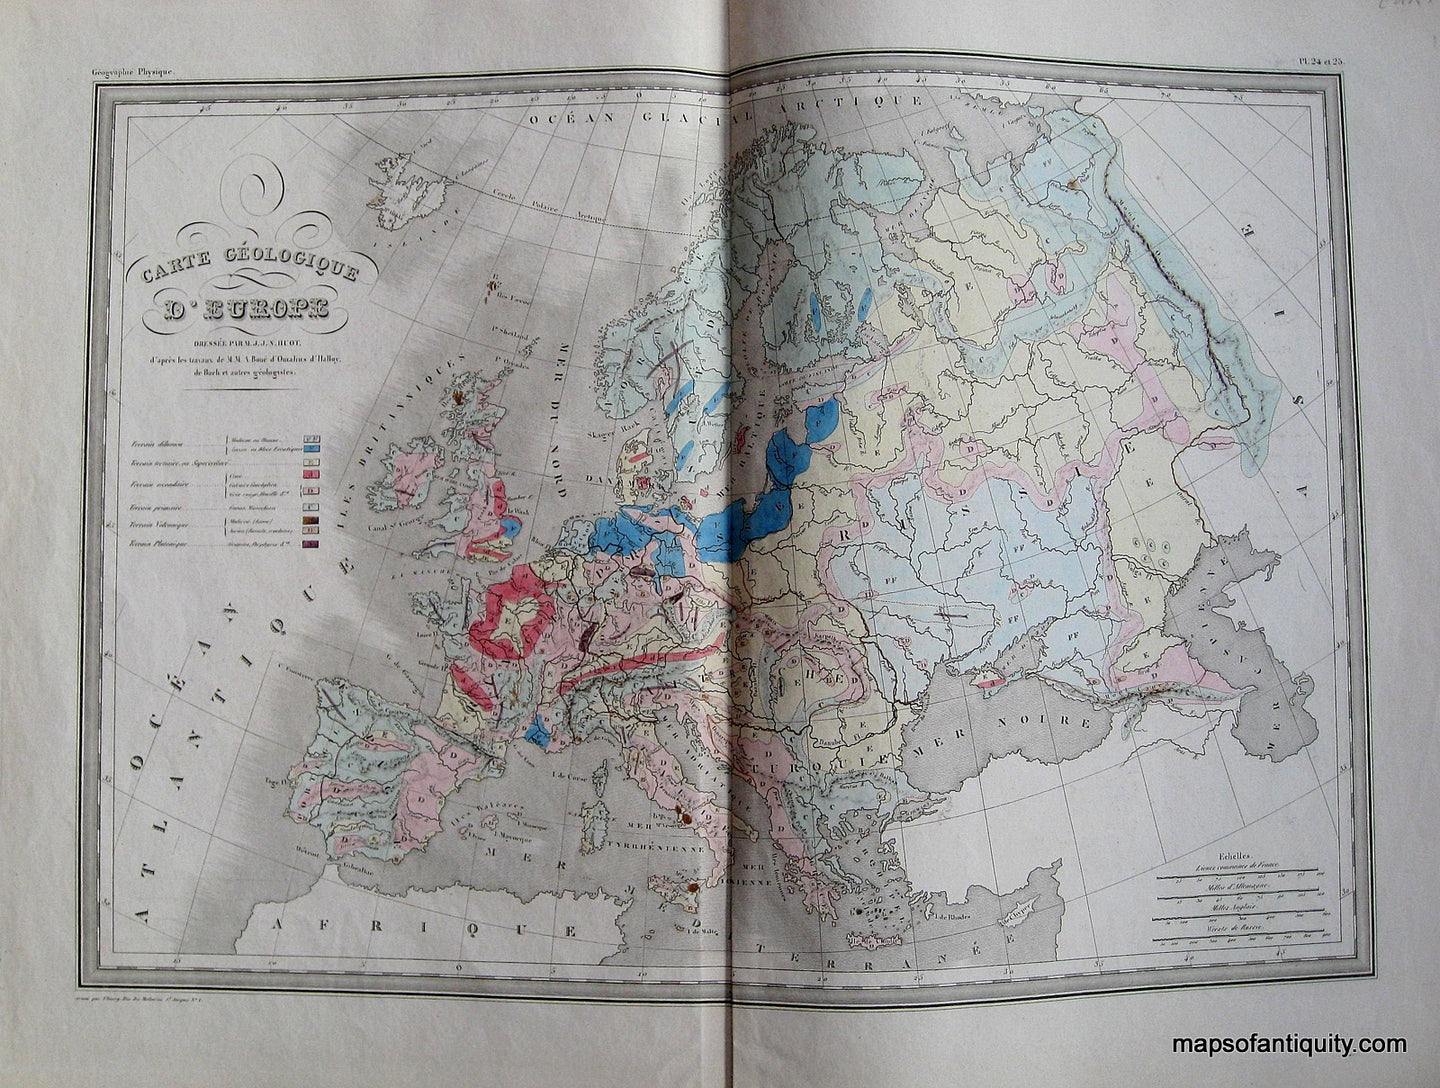 Antique-Hand-Colored-Map-Carte-Geologique-d'Europe.-(Carte-de-grandeur-double.)---1842-Malte-Brun-Maps-Of-Antiquity